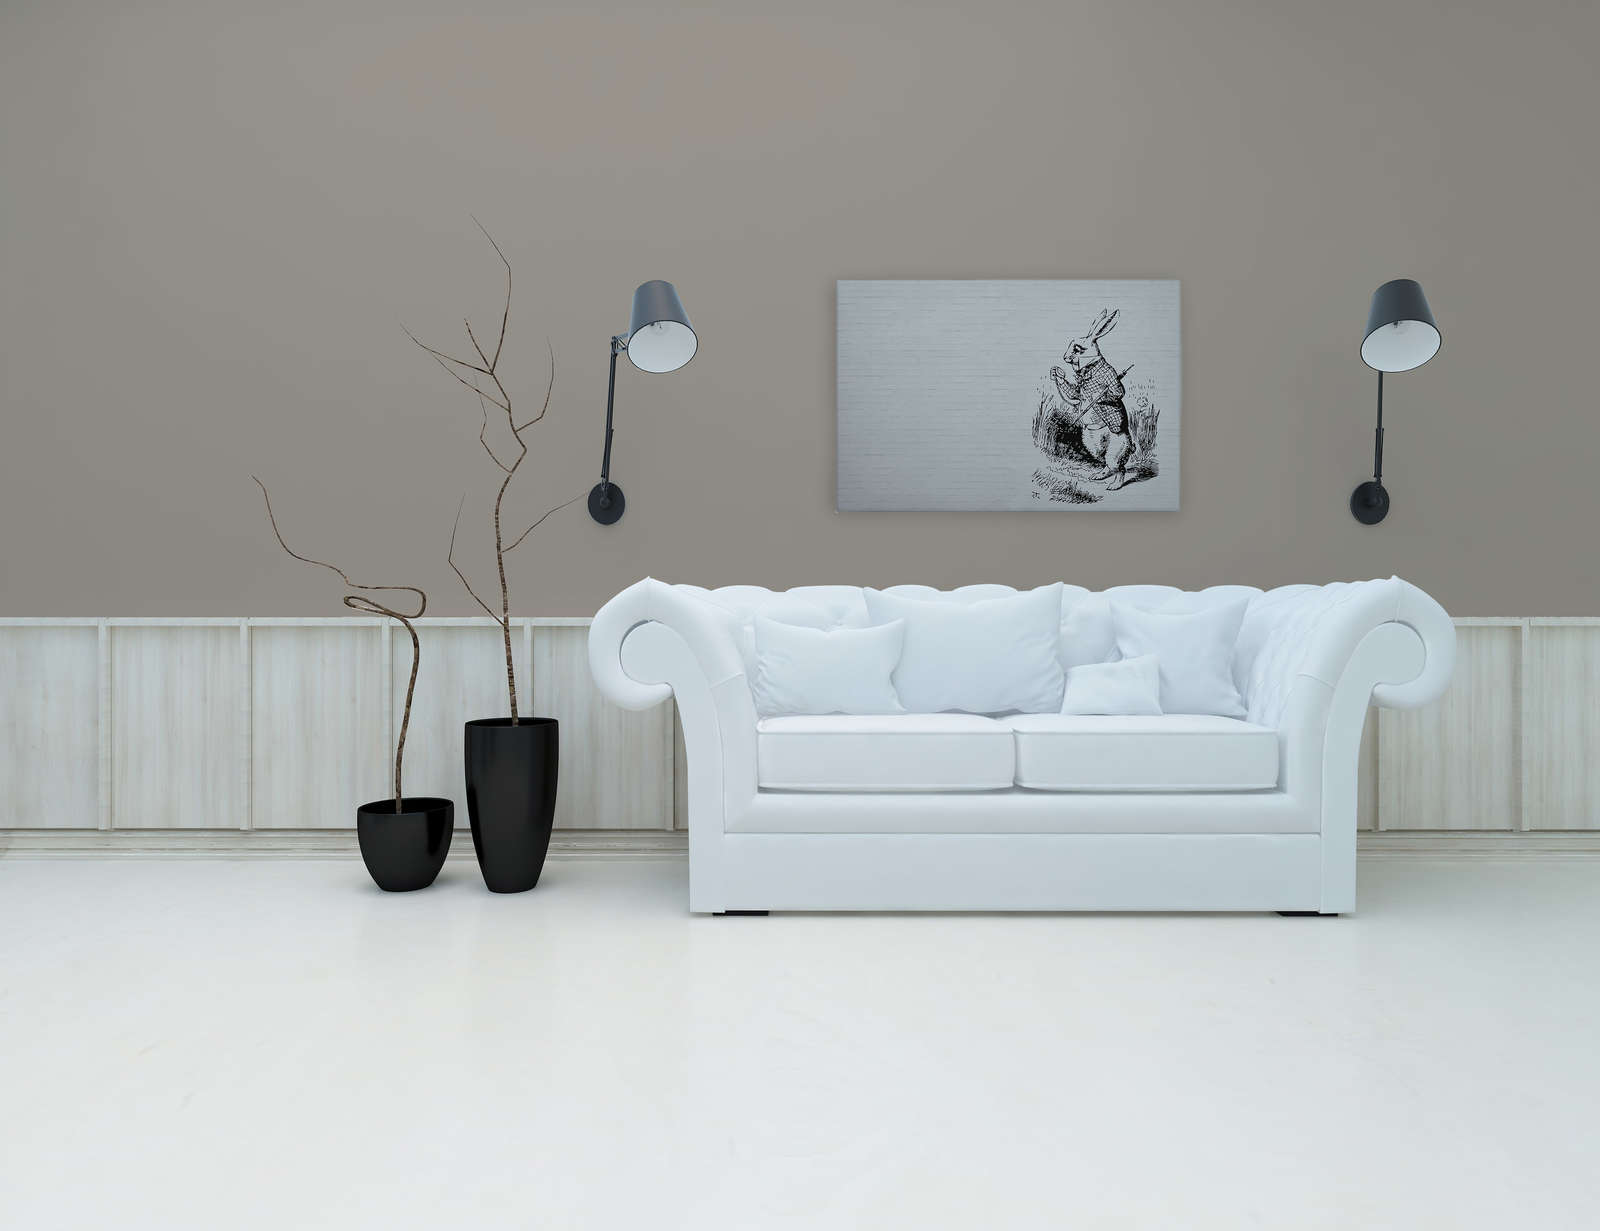             Toile noir et blanc aspect pierre & lapin avec canne - 0,90 m x 0,60 m
        